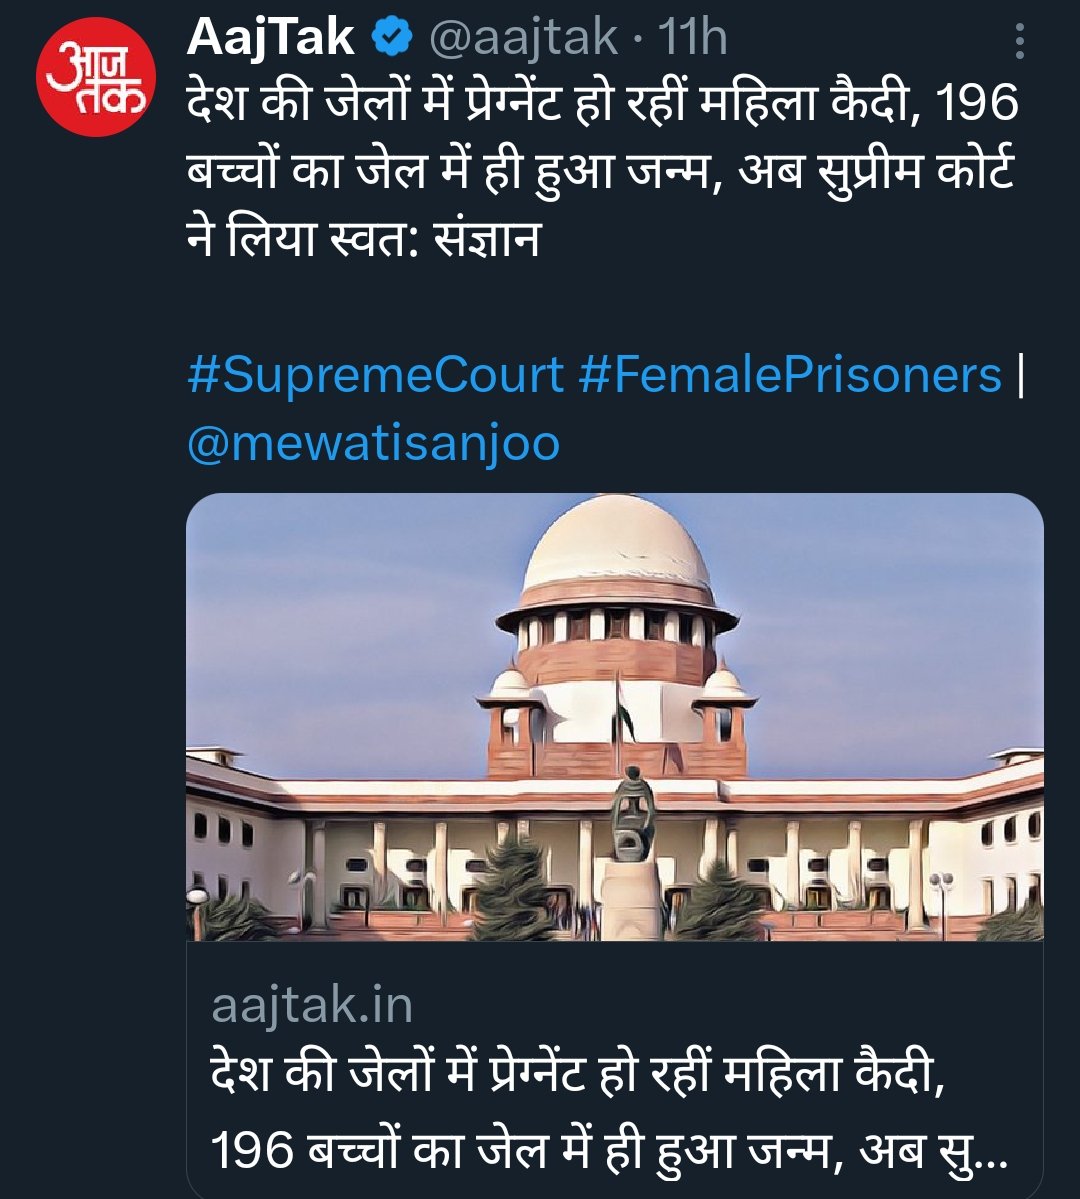 कोई बात नहीं अब जेल का कैदी हो या कोई अफसर उनके बच्चे पैदा करेगी आजकल ऐसी लड़कियों की जेल में बहुत डिमांड है जेल में सेक्स करने लिए कम उम्र की जवान जो सबका दिल बहलाये, क्या लगता है जवान लड़कियाँ जेल में हो और जवानी ऐसे ही ढल जाएगी हो नही सकता। #WomenEmpowerment #Feminist #India